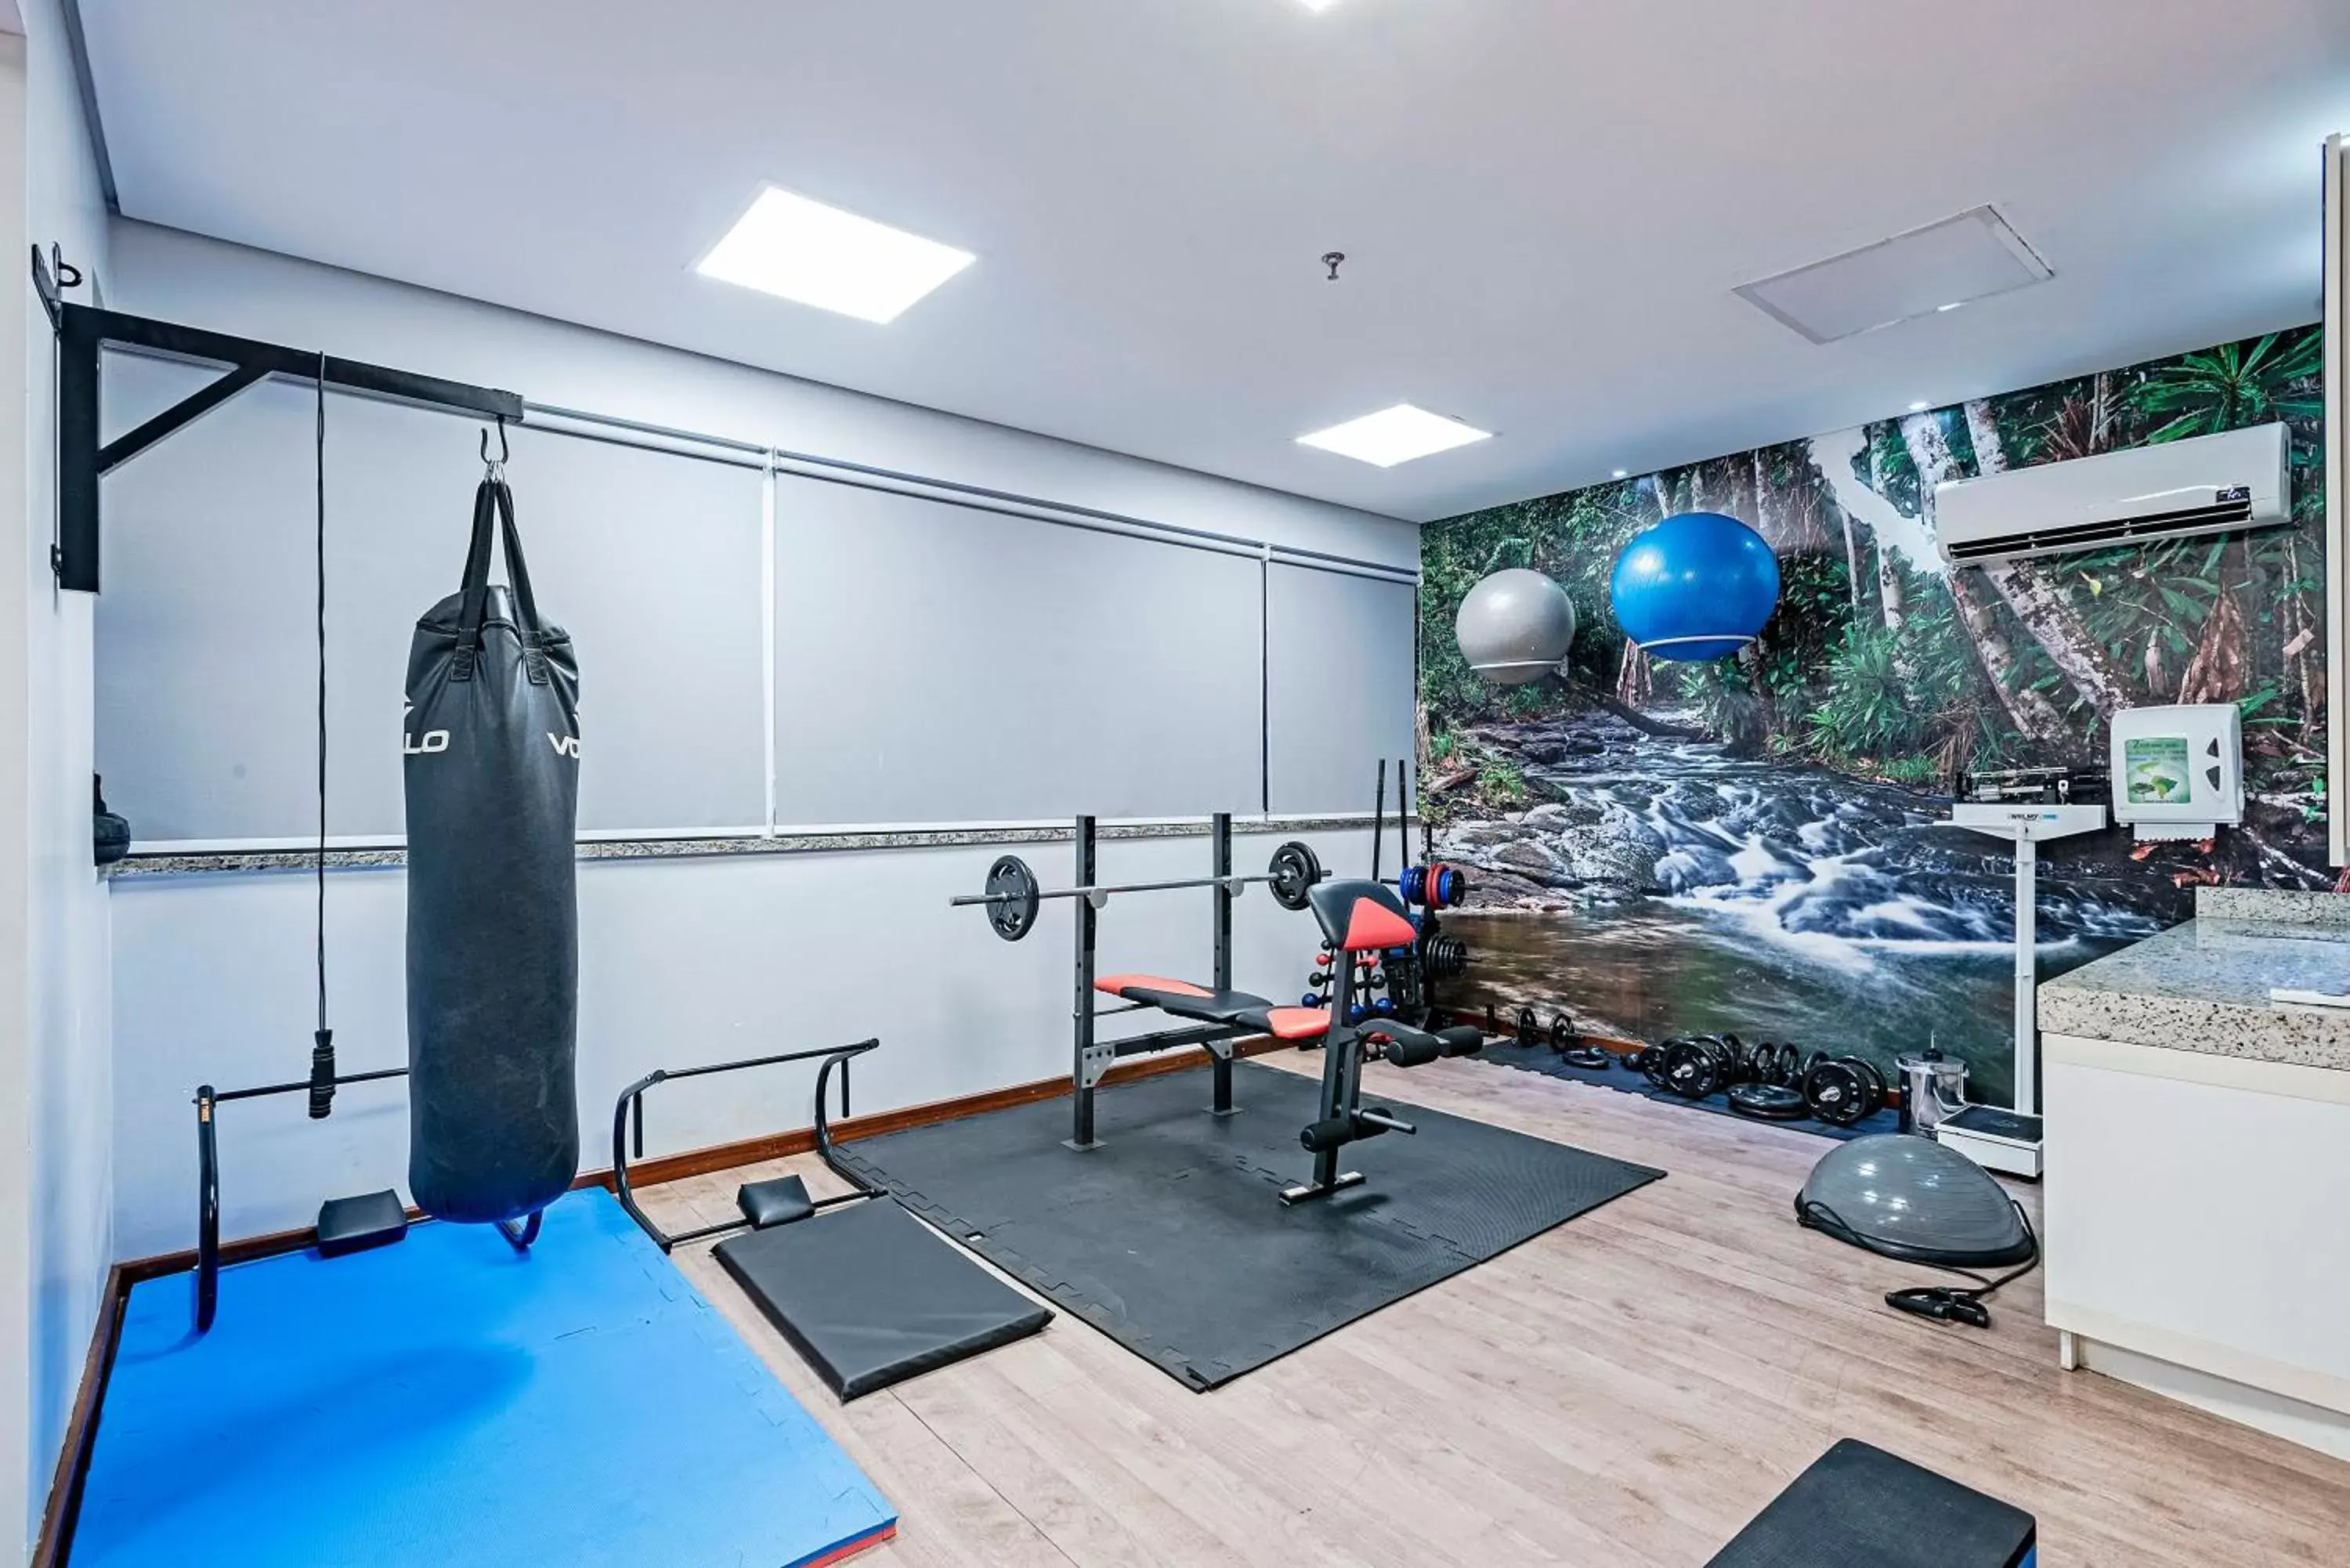 Fitness centre/facilities, Fitness Center/Facilities in Slaviero Porto Velho